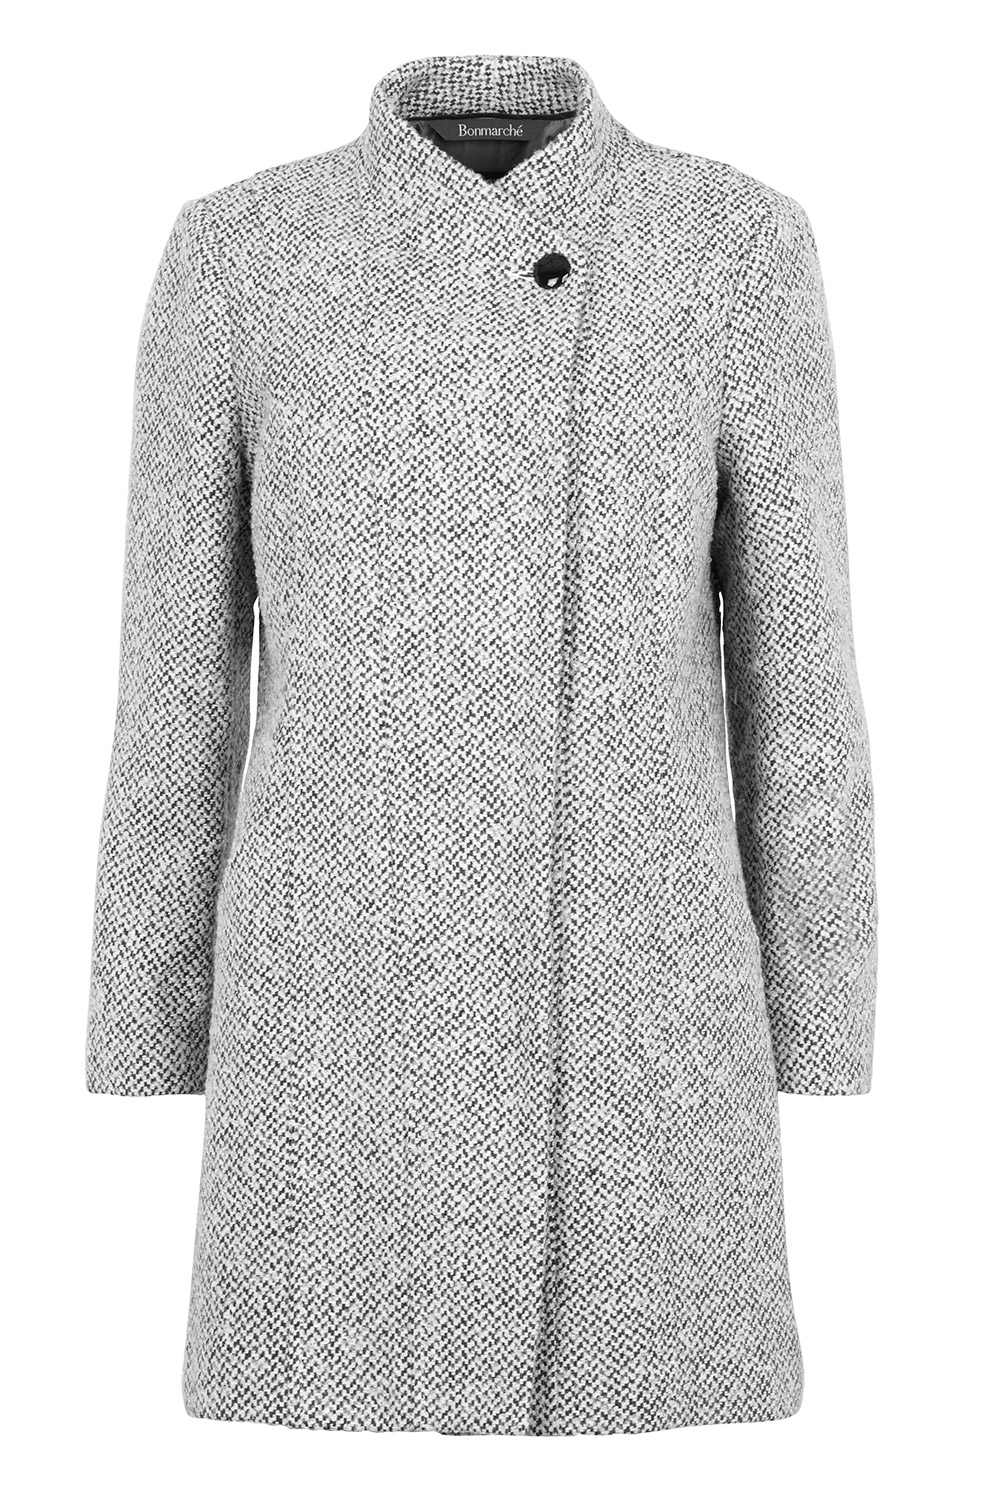 Textured Grey Coat